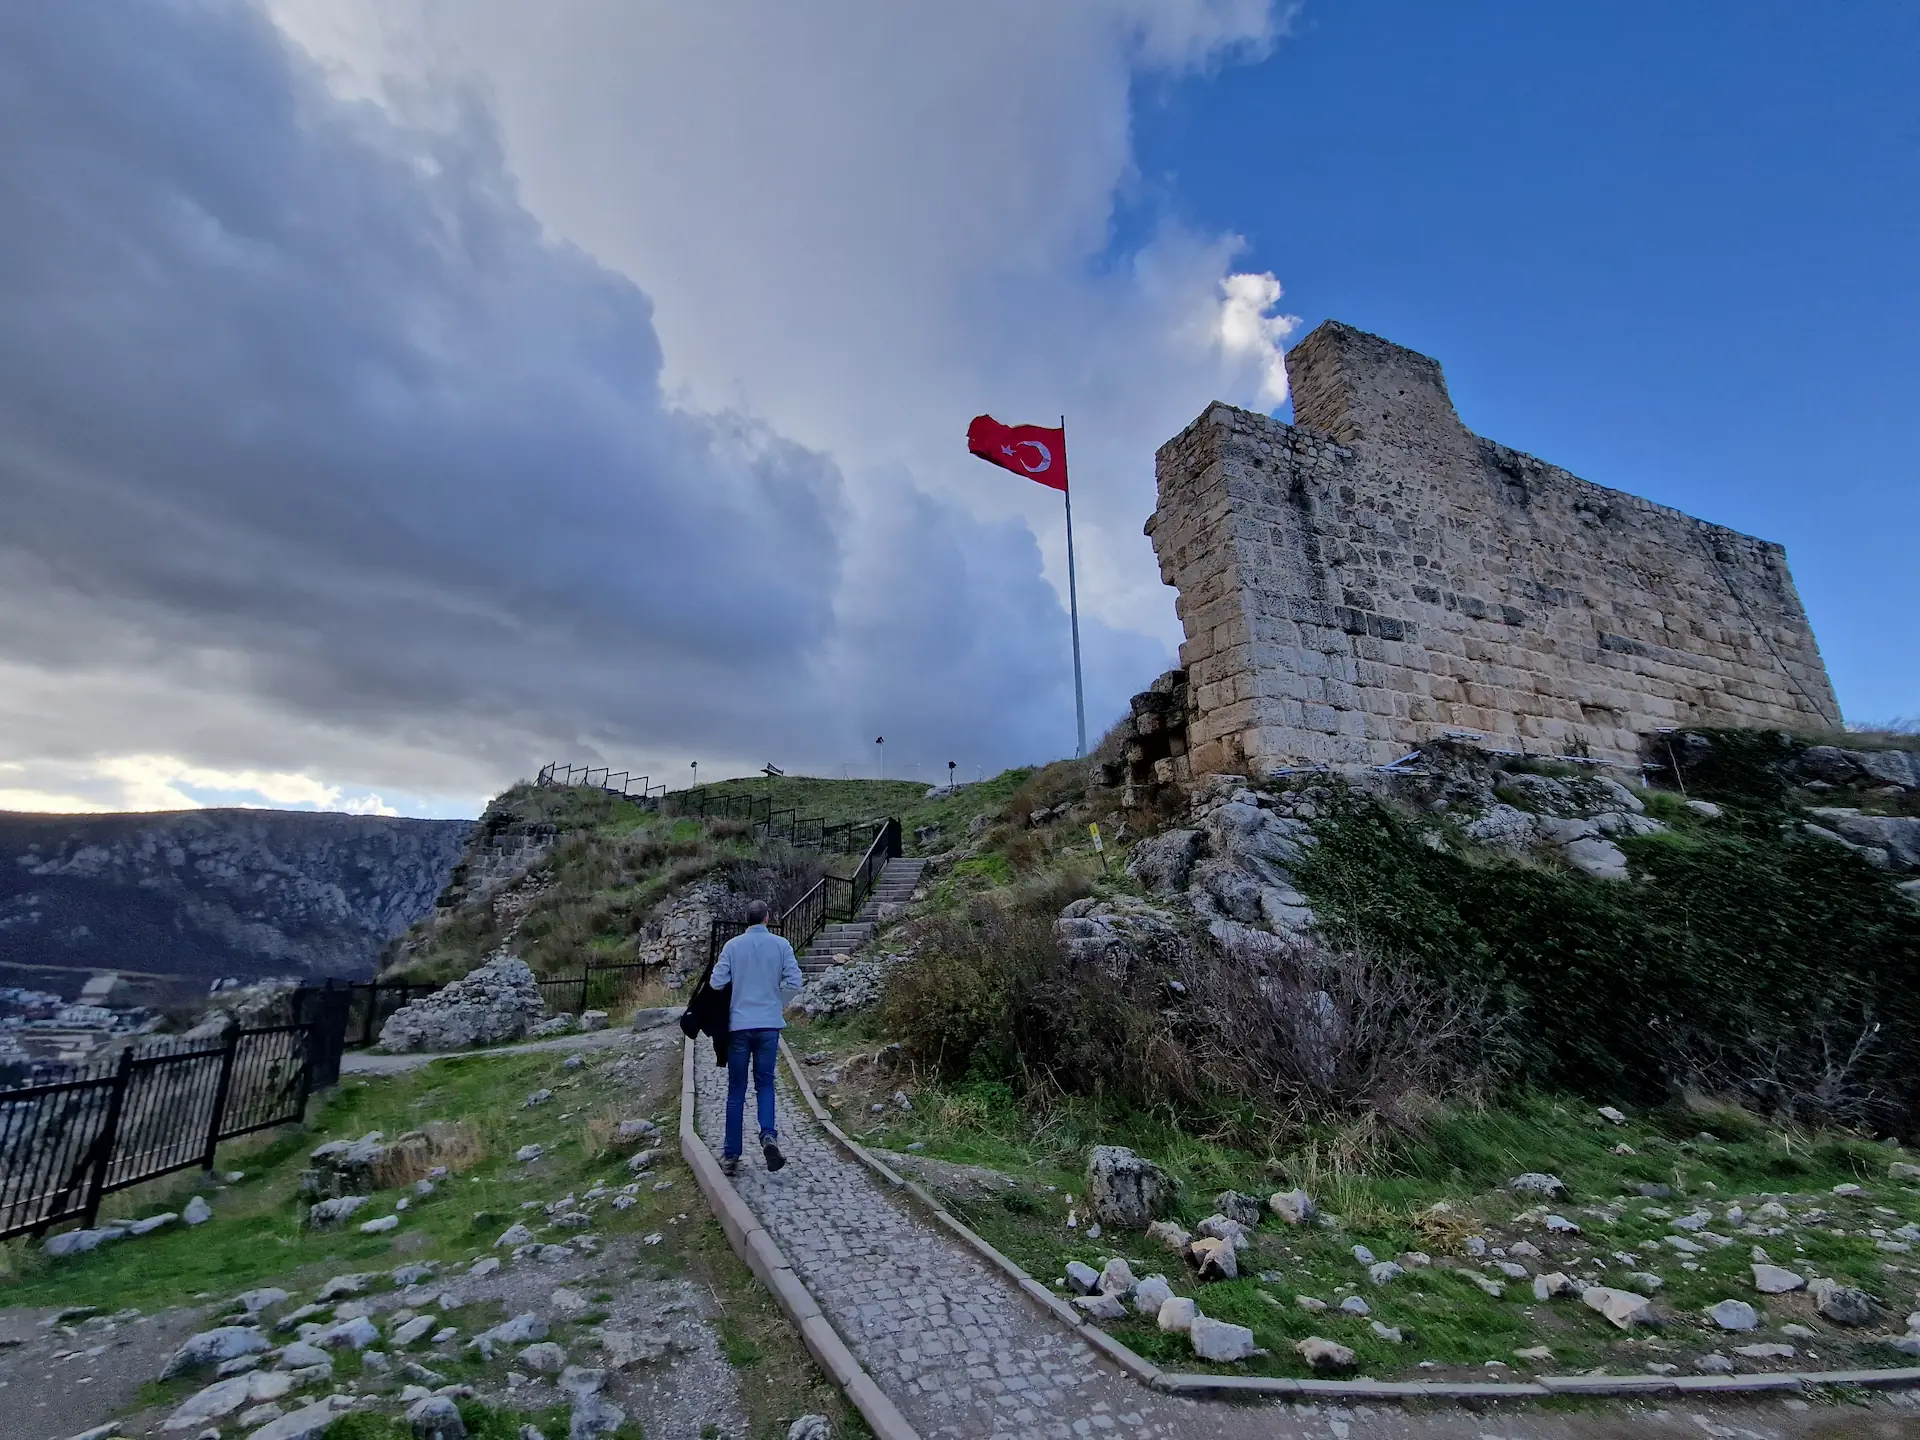 Robin marche jusqu'à la tour finale de la citadelle, un drapeau turc flotte dans le ciel.